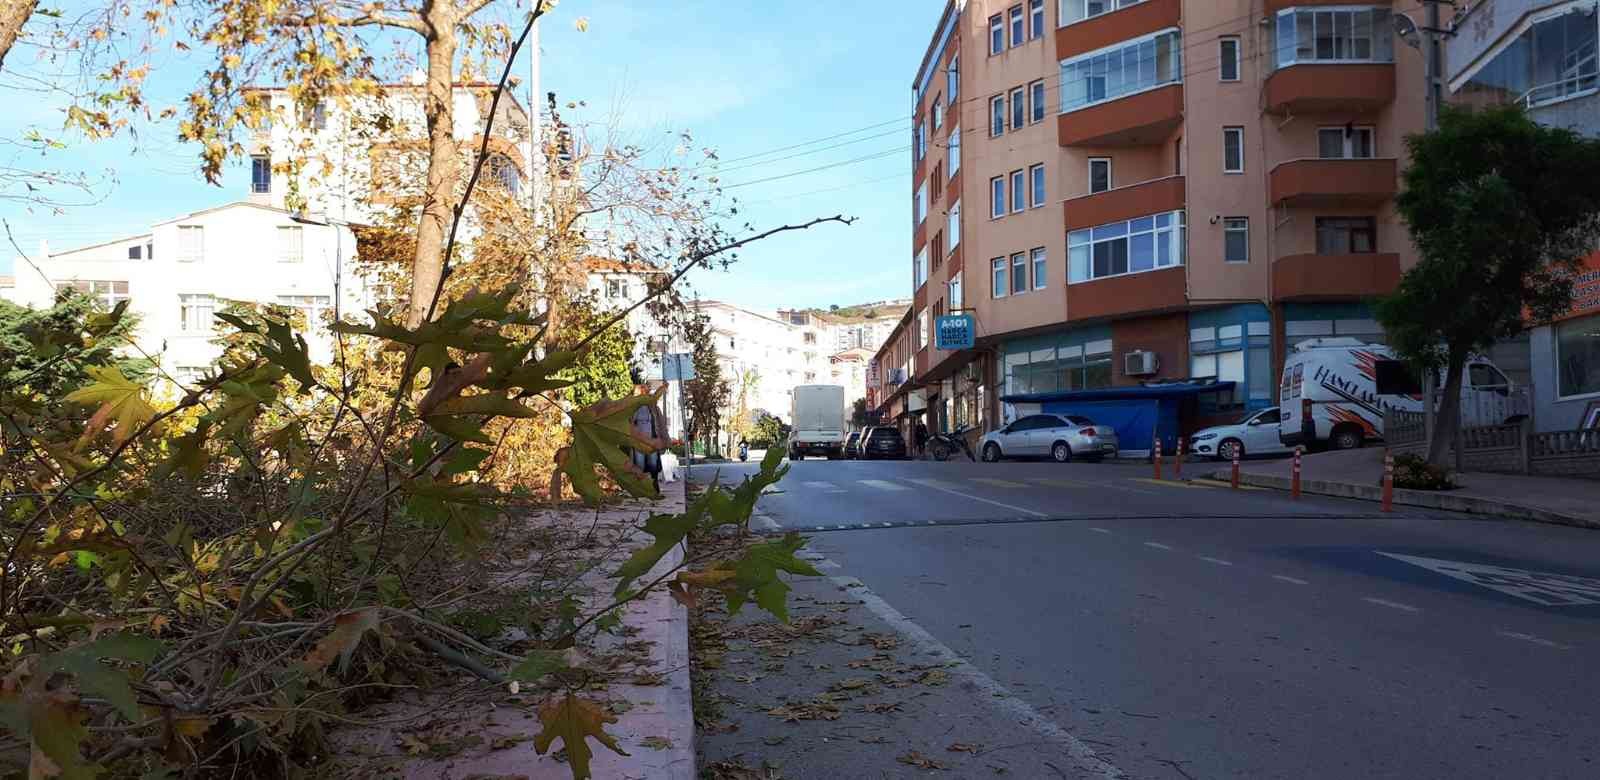 Sinop Belediyesi’nden boyları uzayan ağaçlarla ilgili açıklama